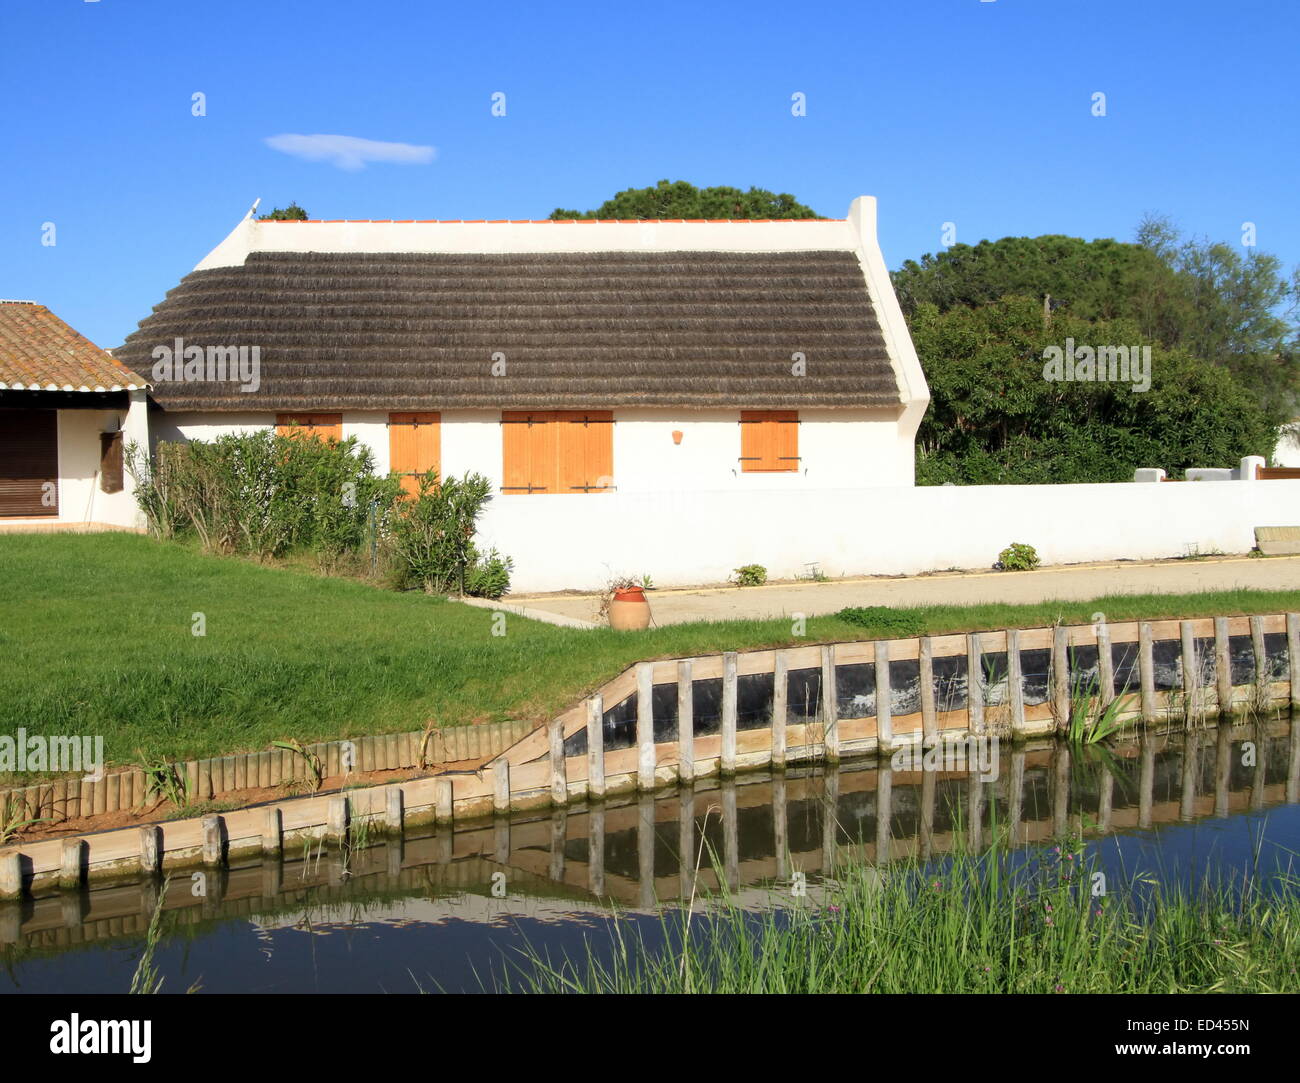 Typische Wächter Haus neben einem kleinen Wasserkanal durch schönes Wetter, Camargue, Frankreich Stockfoto